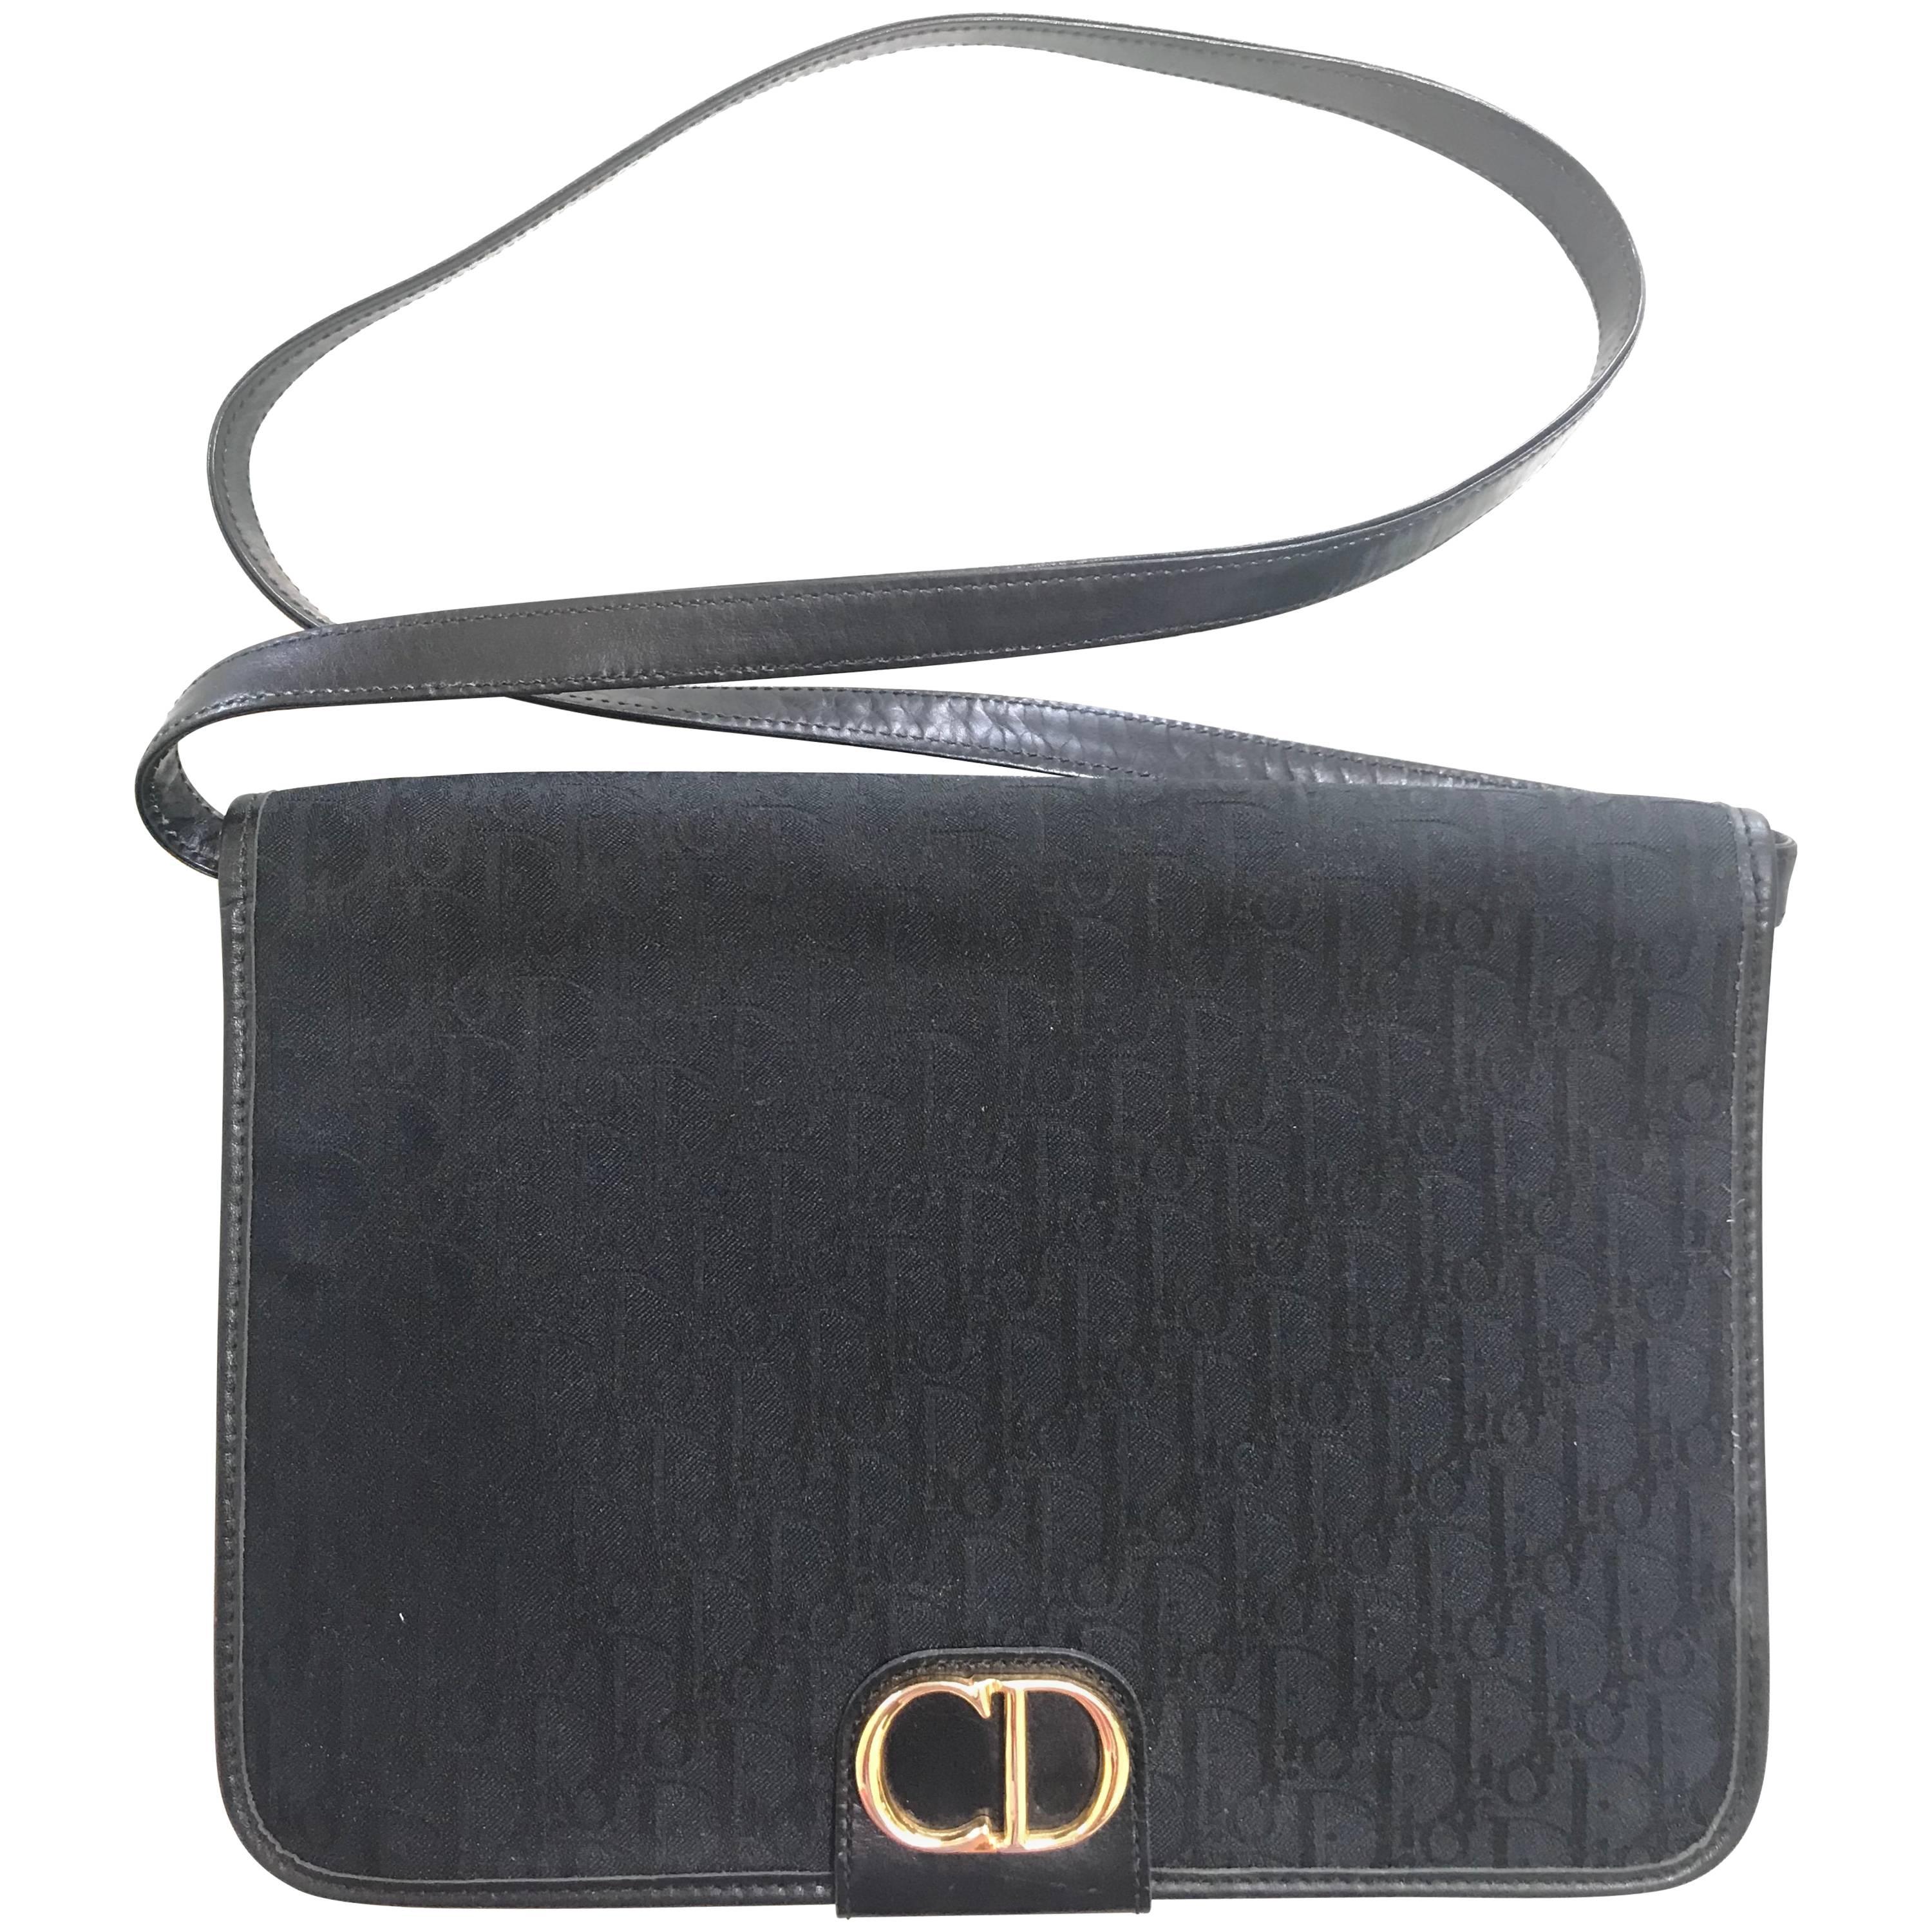 Vintage Christian Dior black logo jacquard shoulder bag, clutch with gold motif. For Sale